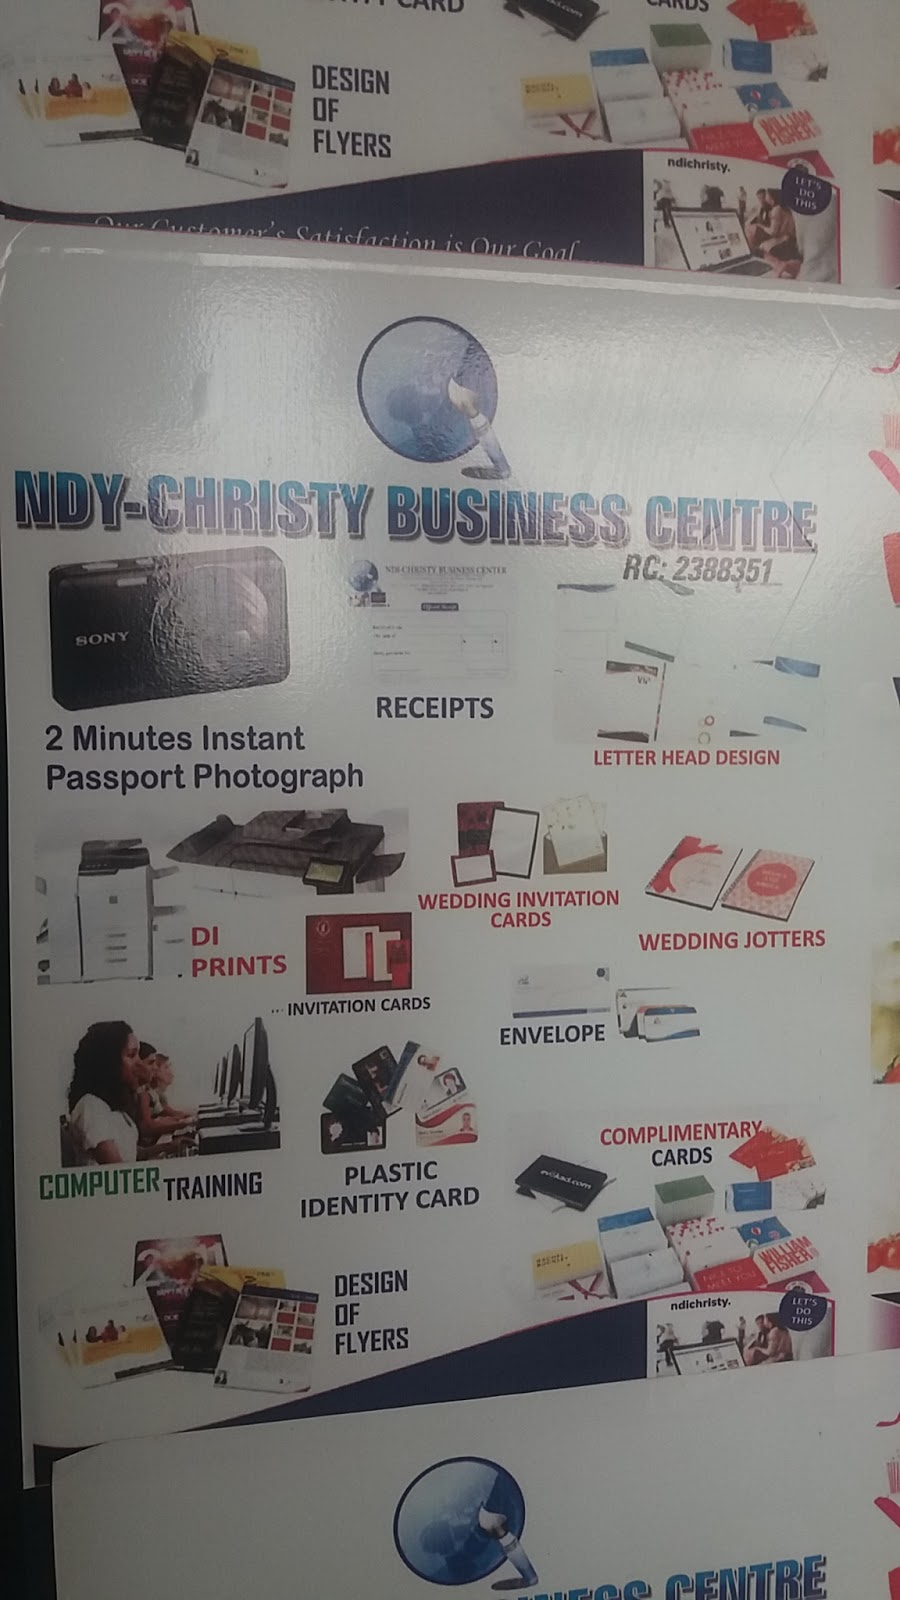 Ndy-Christy Business Centre